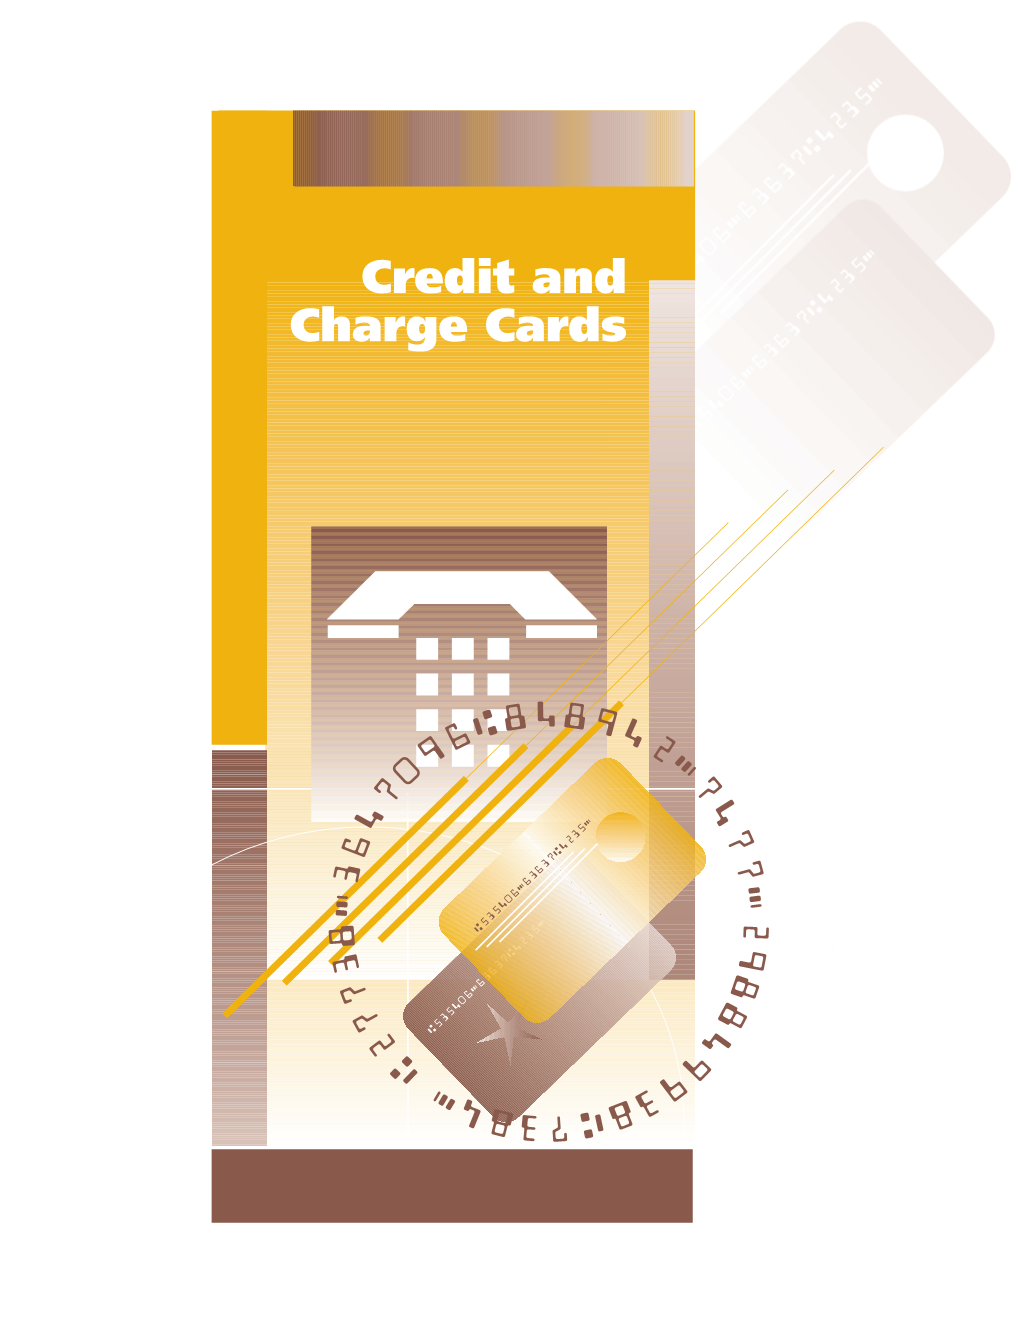 Credit and Charge Cards Credit and Charge Cards